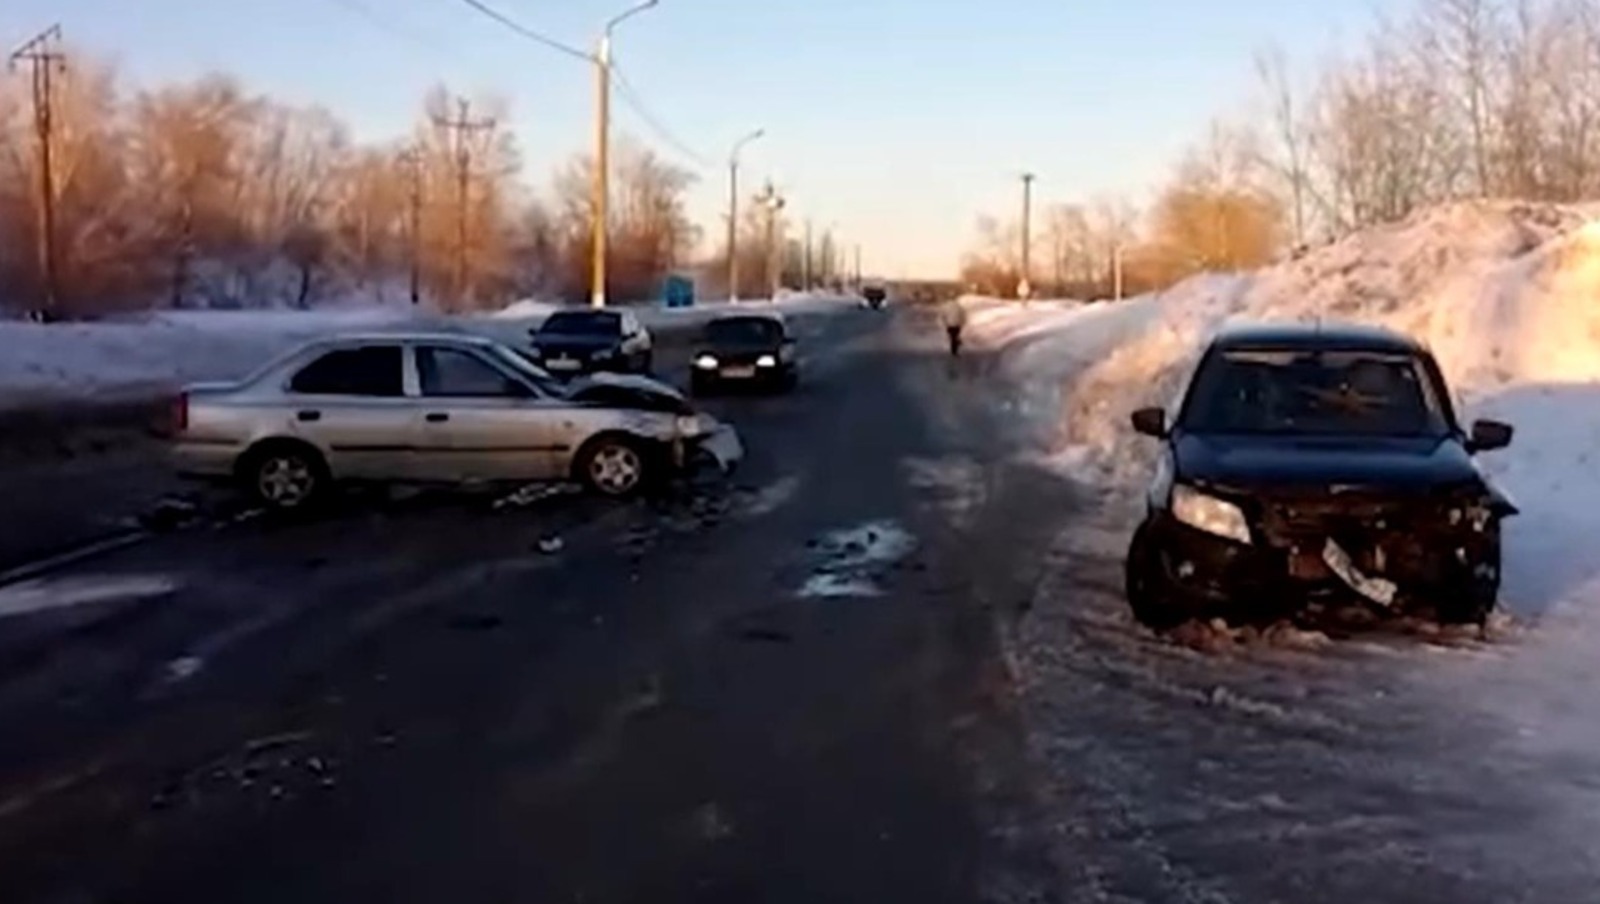 Одна обгоняла, другой не уступил: в Башкирии в ДТП пострадали водители «Лады Гранты» и иномарки (ВИДЕО)